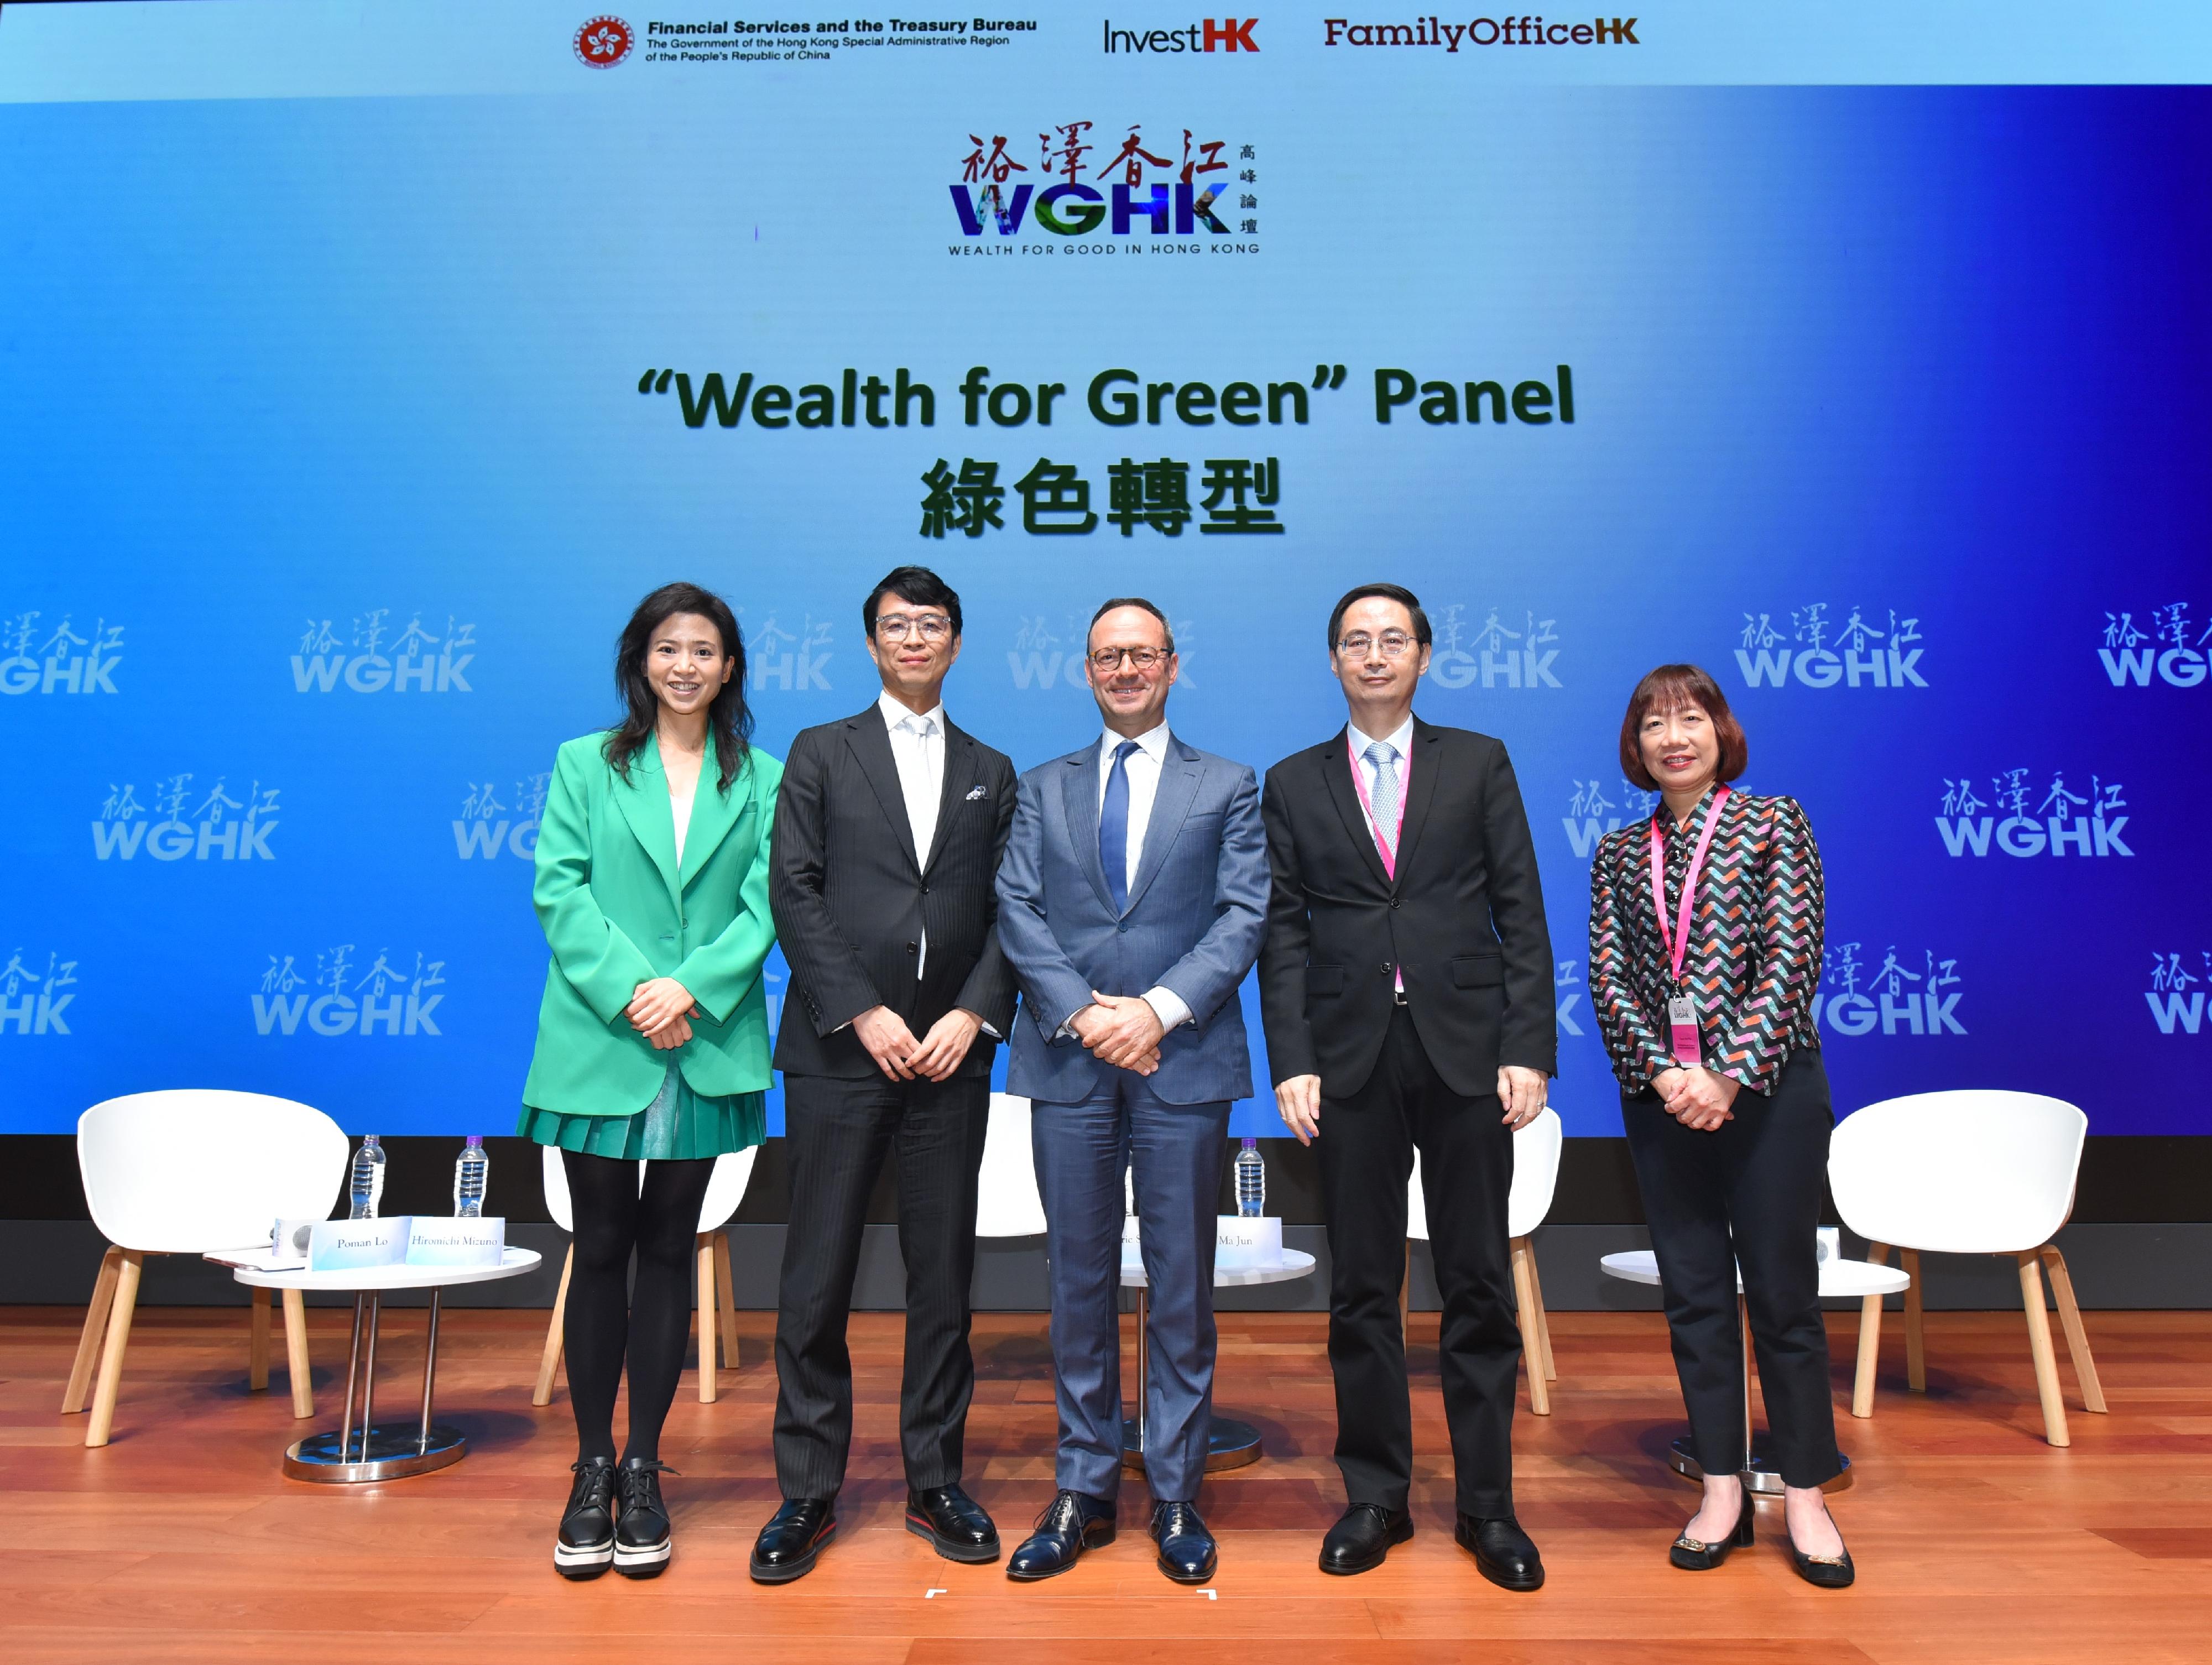 「裕澤香江」高峰論壇今日（三月二十四日）設有以「綠色轉型」為題的主題研討，由可持續科技學院創辦人、AlphaTrio Capital 創辦人及始創合夥人、富豪酒店集團副主席羅寶文主持。主題研討探索家族辦公室在應對全球暖化影響方面扮演的重要角色。演講嘉賓還探討了香港在綠色金融以及推動世界向可持續發展轉型方面的貢獻。演講嘉賓（由左至右）：羅寶文；特斯拉董事會成員、日本政府養老投資基金前首席投資官、聯合國創新金融和可持續投資前特使水野弘道；殷拓集團亞洲區主席、殷拓集團霸菱亞洲投資基金主管莊佳誠；香港綠色金融協會主席及會長馬駿，以及滙豐環球私人銀行及財富管理亞洲區首席投資總監范卓雲。